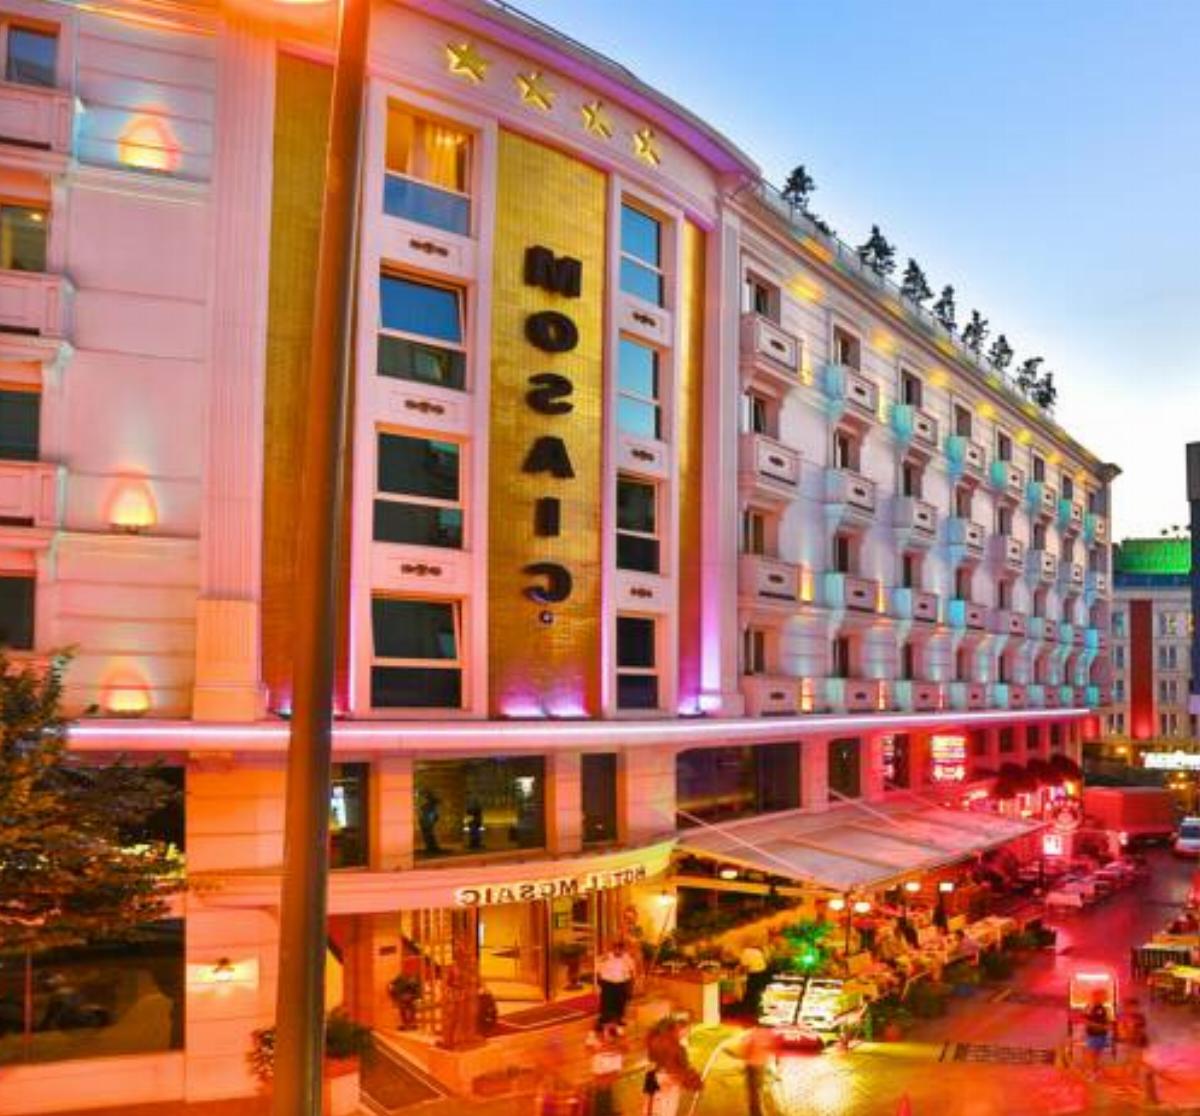 Mosaic Hotel Hotel İstanbul Turkey